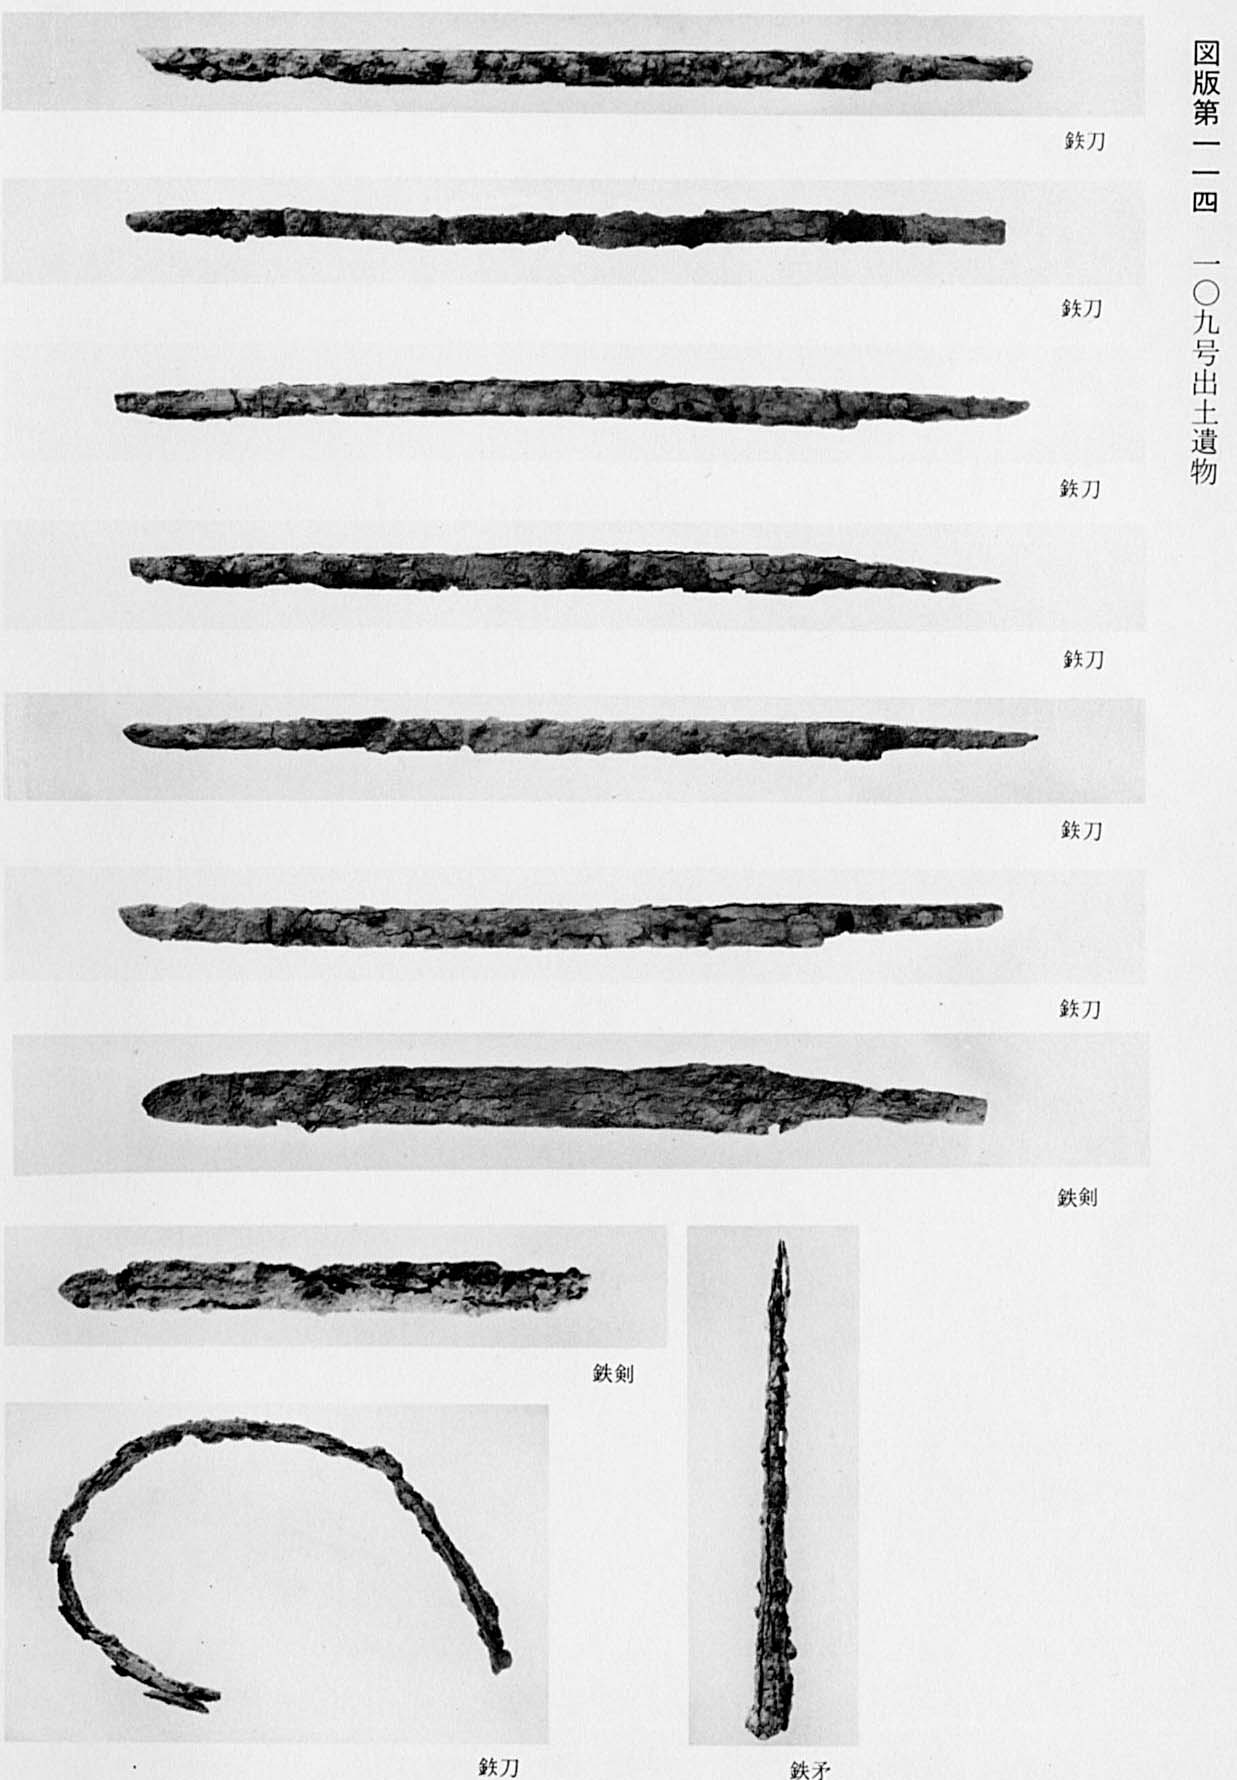 6本の鉄の刀と、2本の鉄の剣と、曲がっている鉄の刀と、鉄の矛が、それぞれ一枚づつ出土された状態で撮影されている、図版114 109号遺物出土遺物のモノクロ写真